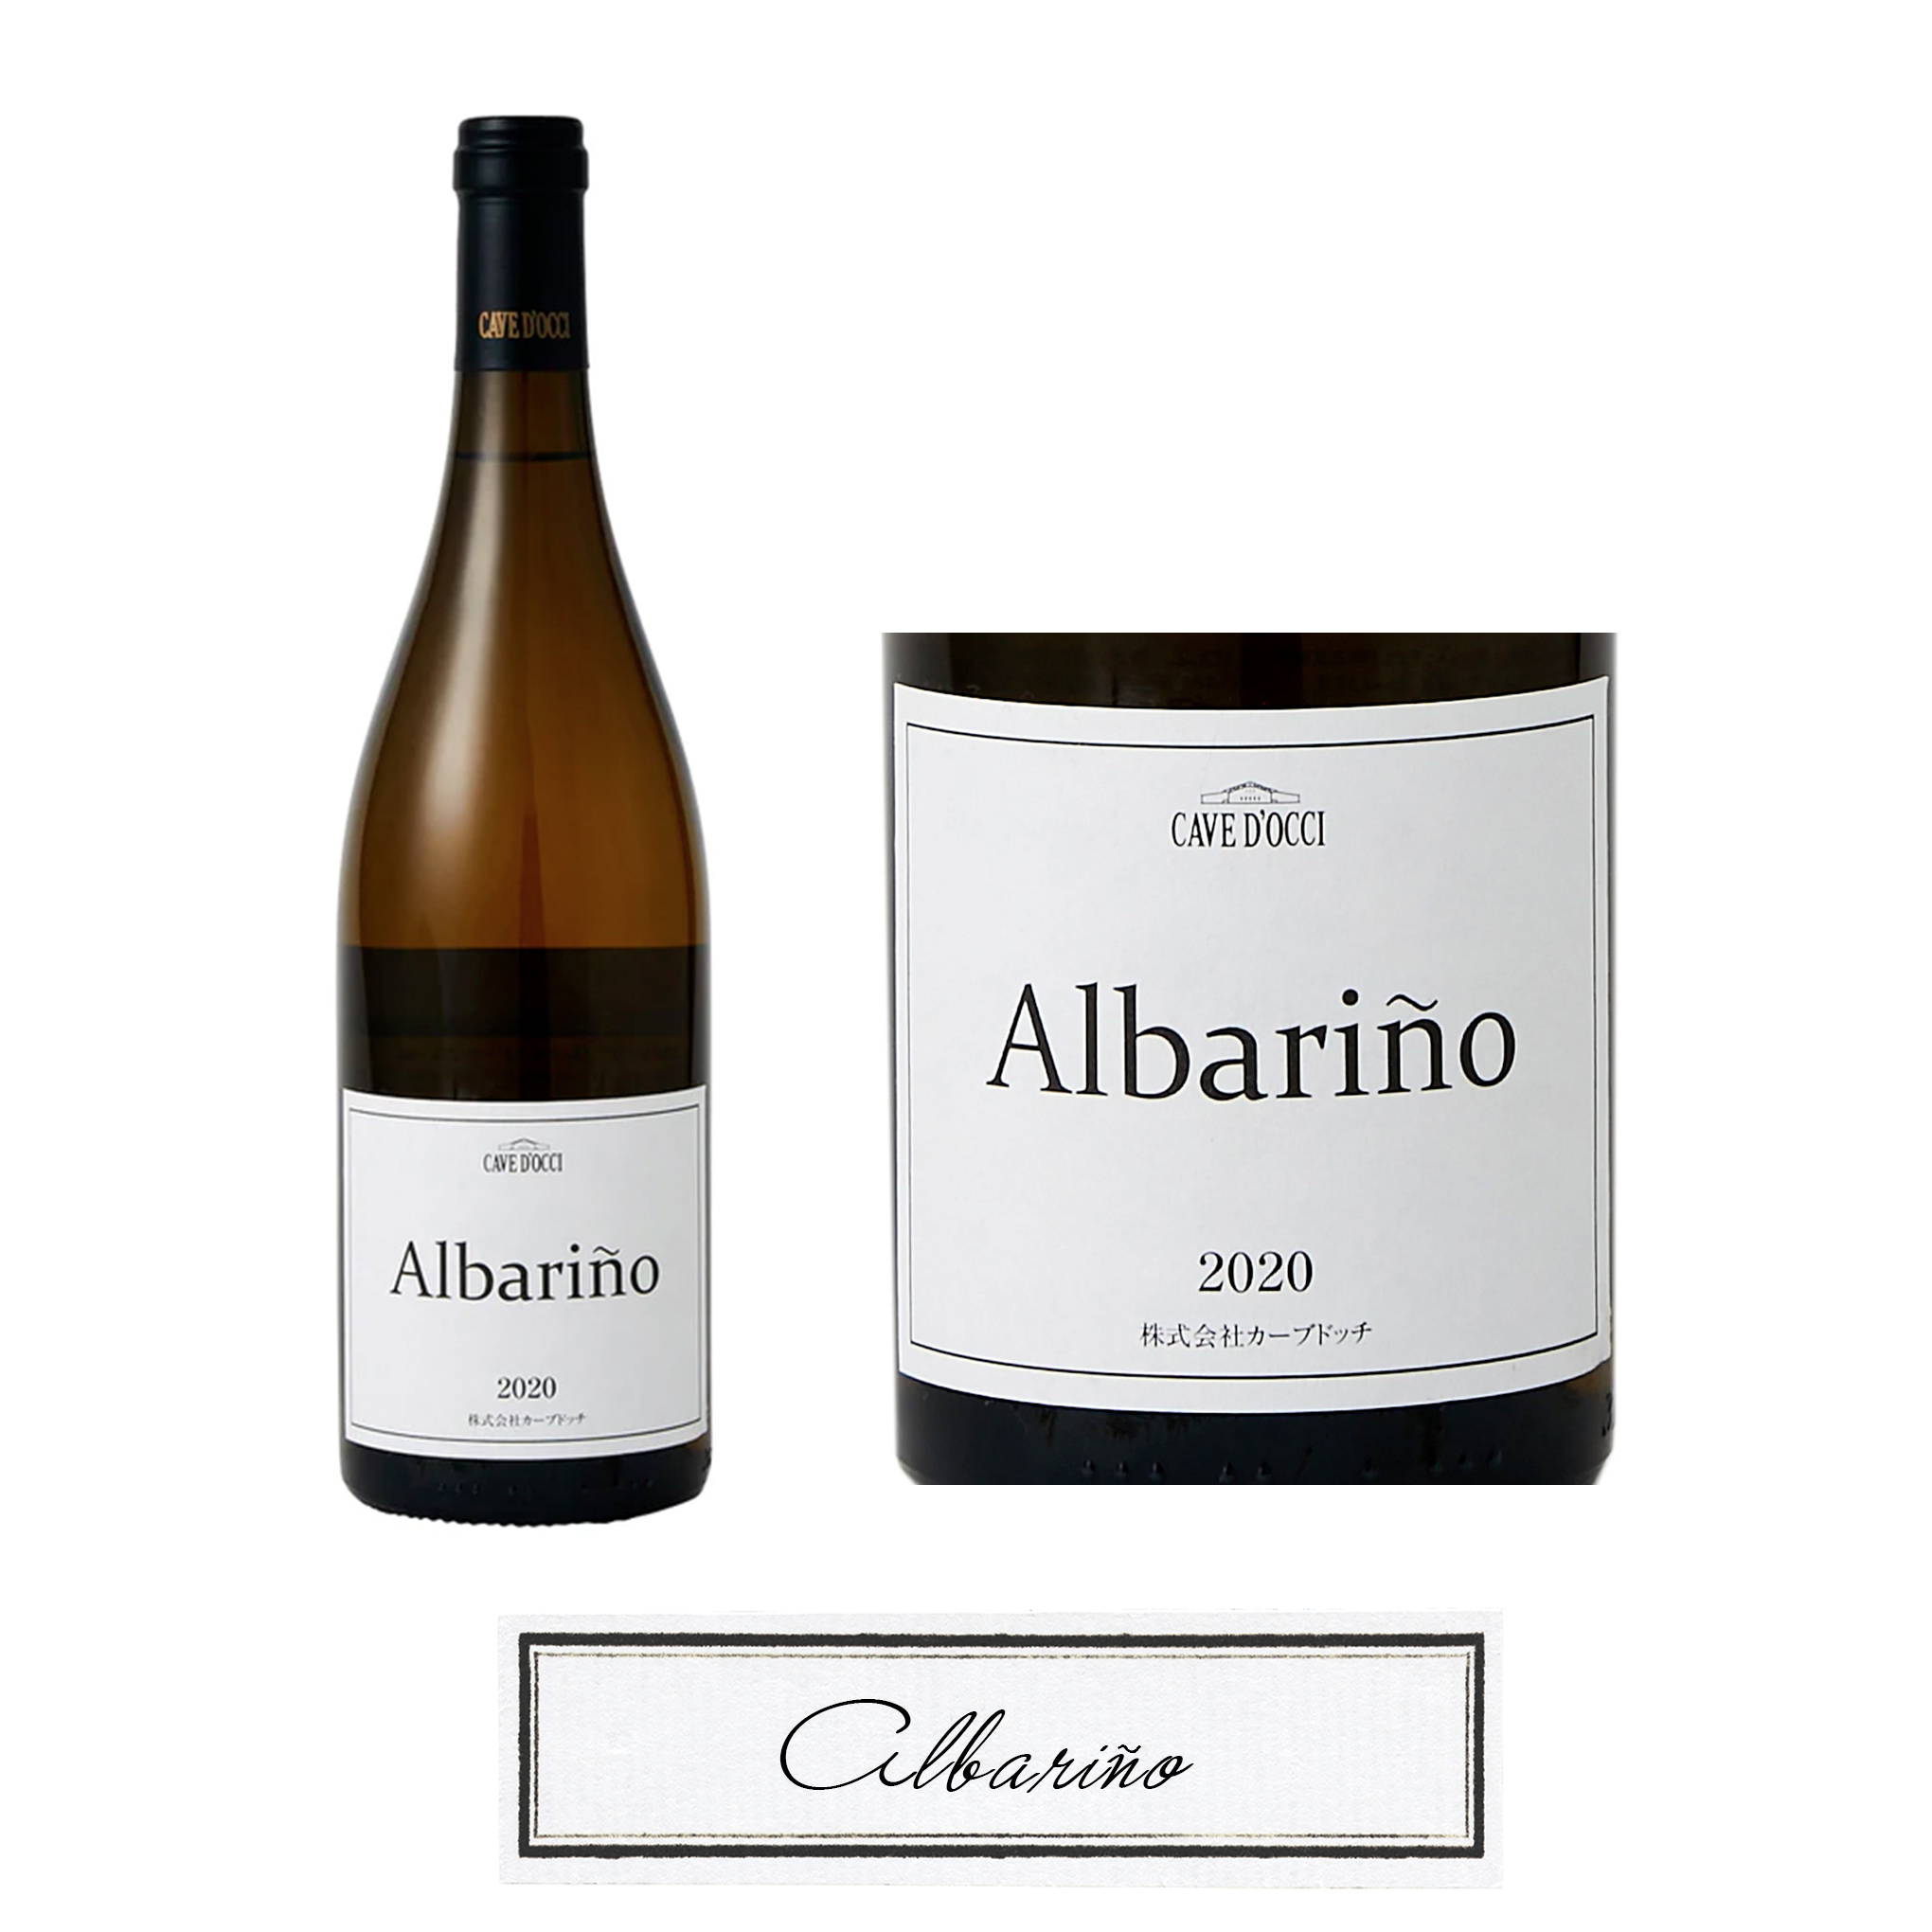 新潟・角田浜の砂浜のような土壌に適したブドウ品種、アルバリーニョで風土を表現した名作ワイン。カーブドッチ・ワイナリーの代名詞「2020 アルバリーニョ」。